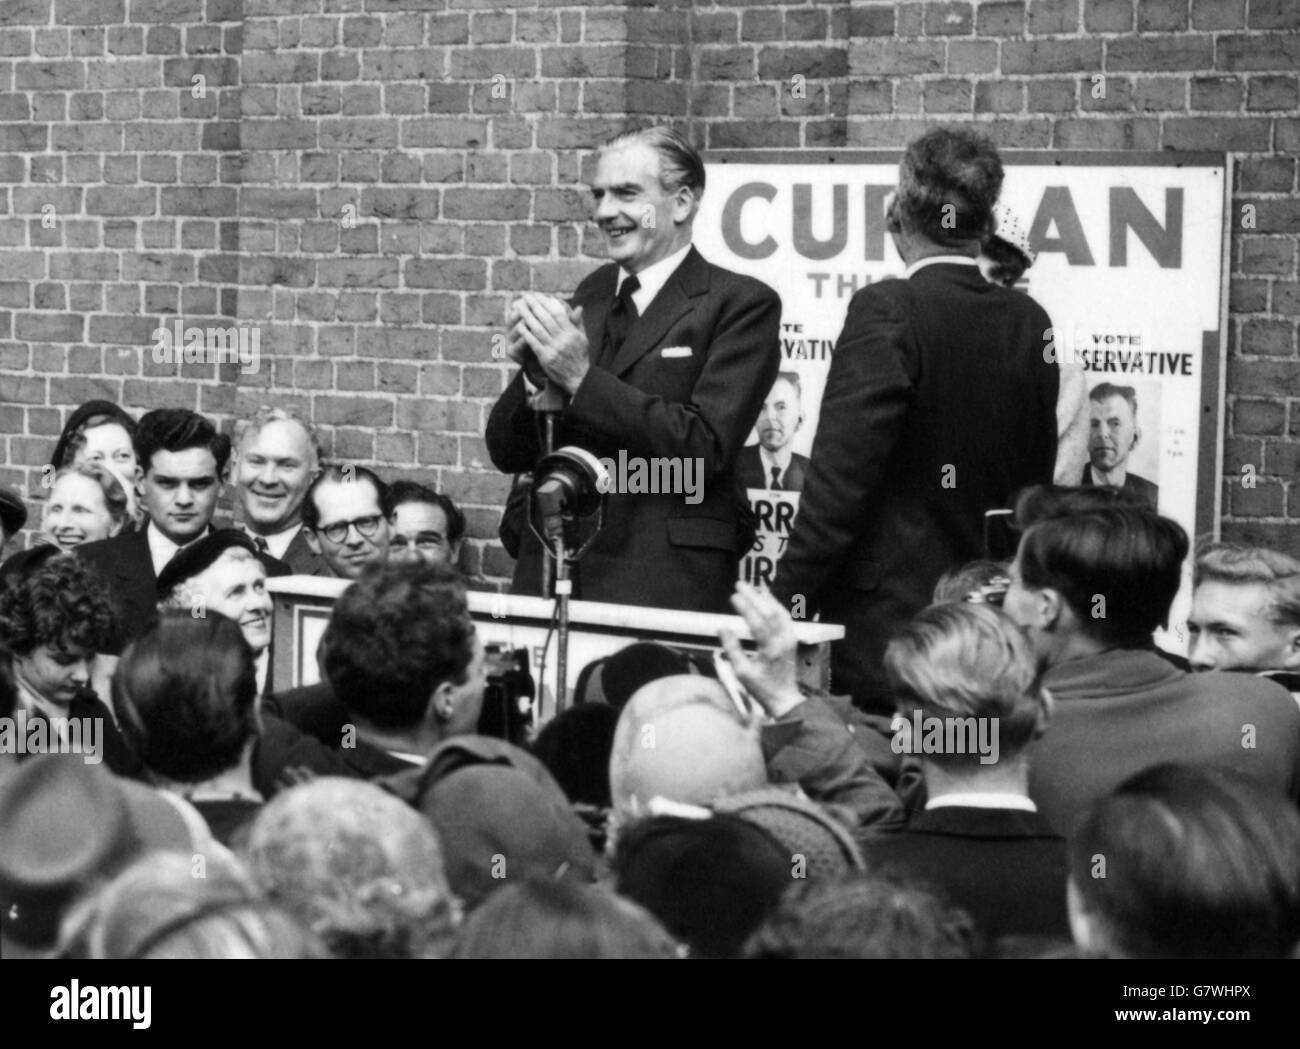 Freitag, den 13., aber der britische Premier Sir Anthony Eden scheint sich sicher zu sein, dass es sein Glückstag ist, da er sich glücklich vor einer allgemeinen Wahlsitzung in Uxbridge, Middlesex, wendet. Stockfoto